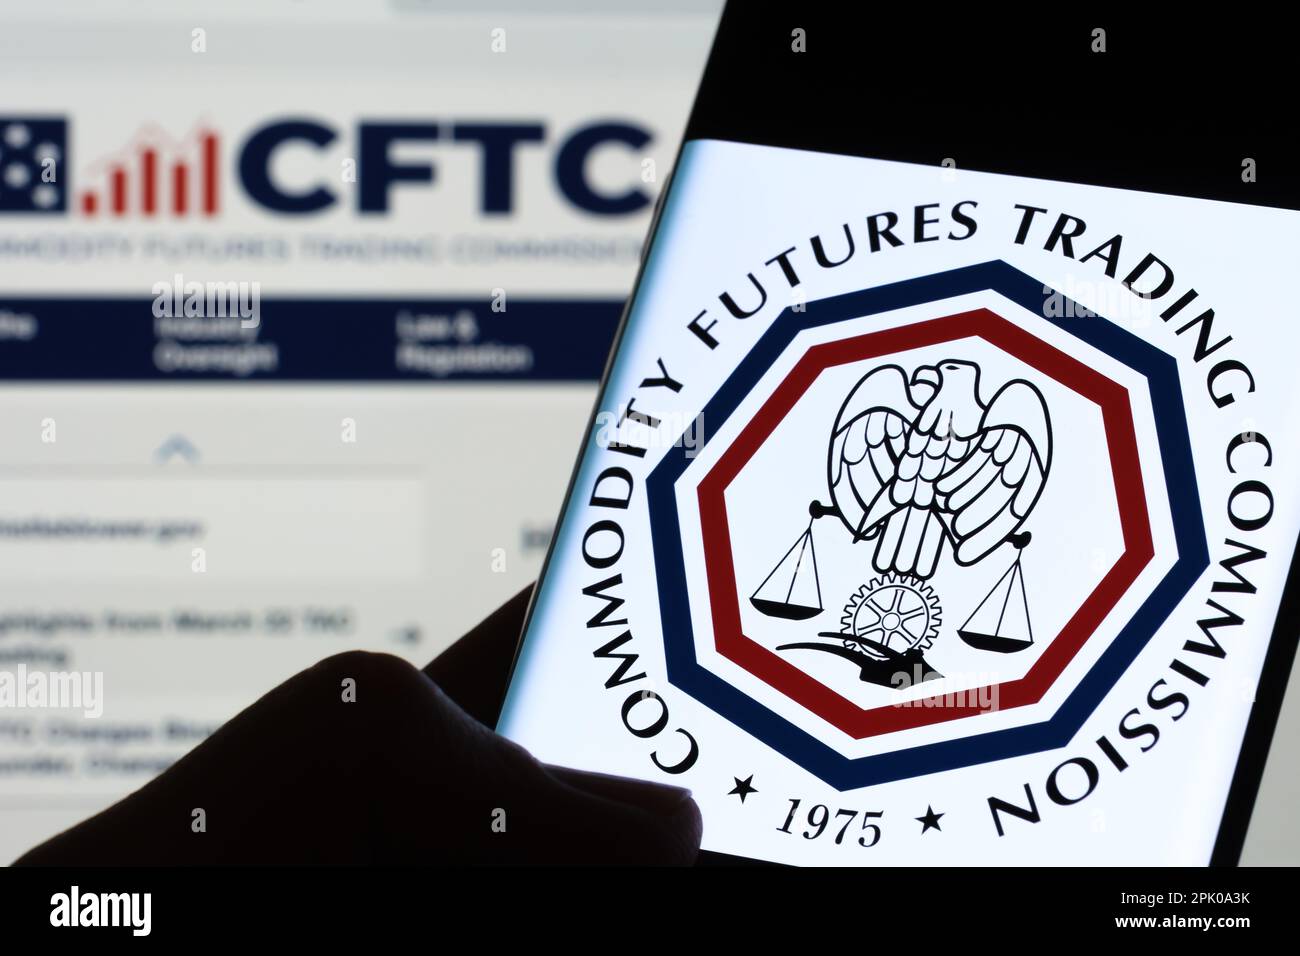 Commodity futures Trading Commission logo CFTC vu sur l'écran de smartphone tenir dans les mains dans le noir. Stafford, Royaume-Uni, 3 avril 2023. Banque D'Images